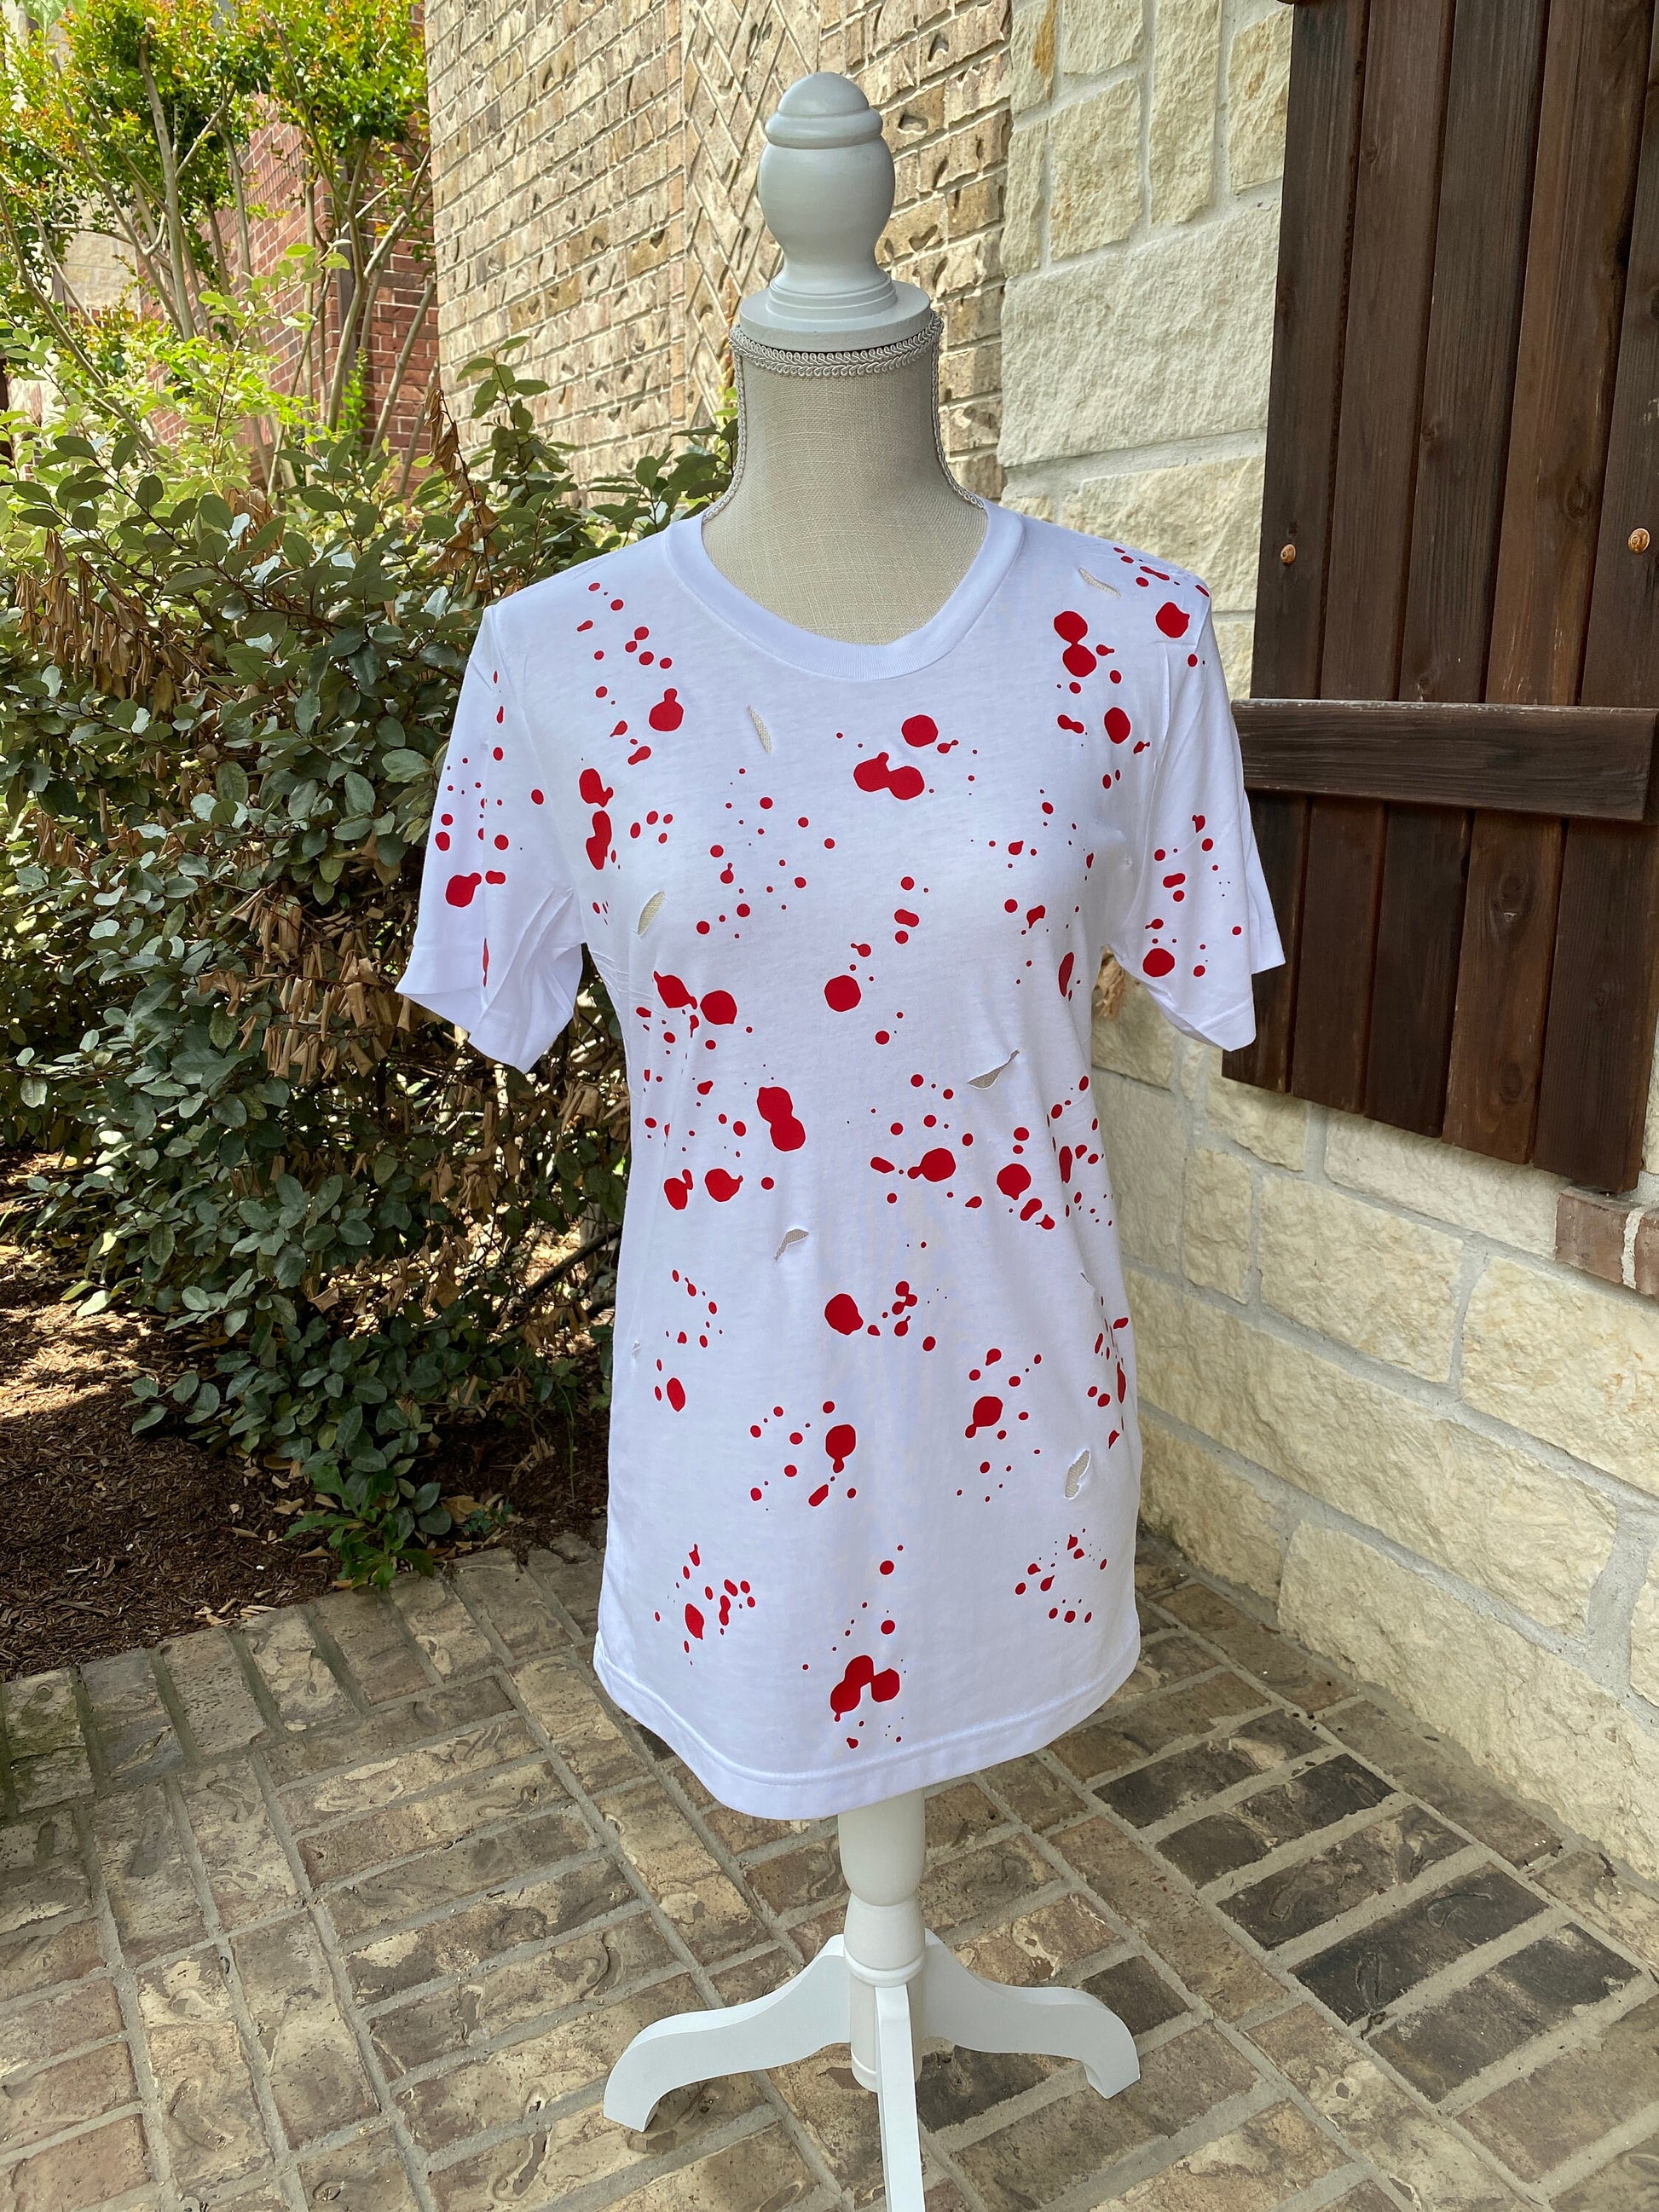 Halloween Blood Stained Shirt, Blood Splatter Costume, Ripped T Shirt, Bloody Halloween Shirt, Murder Crime Scene Horror Lover Gift